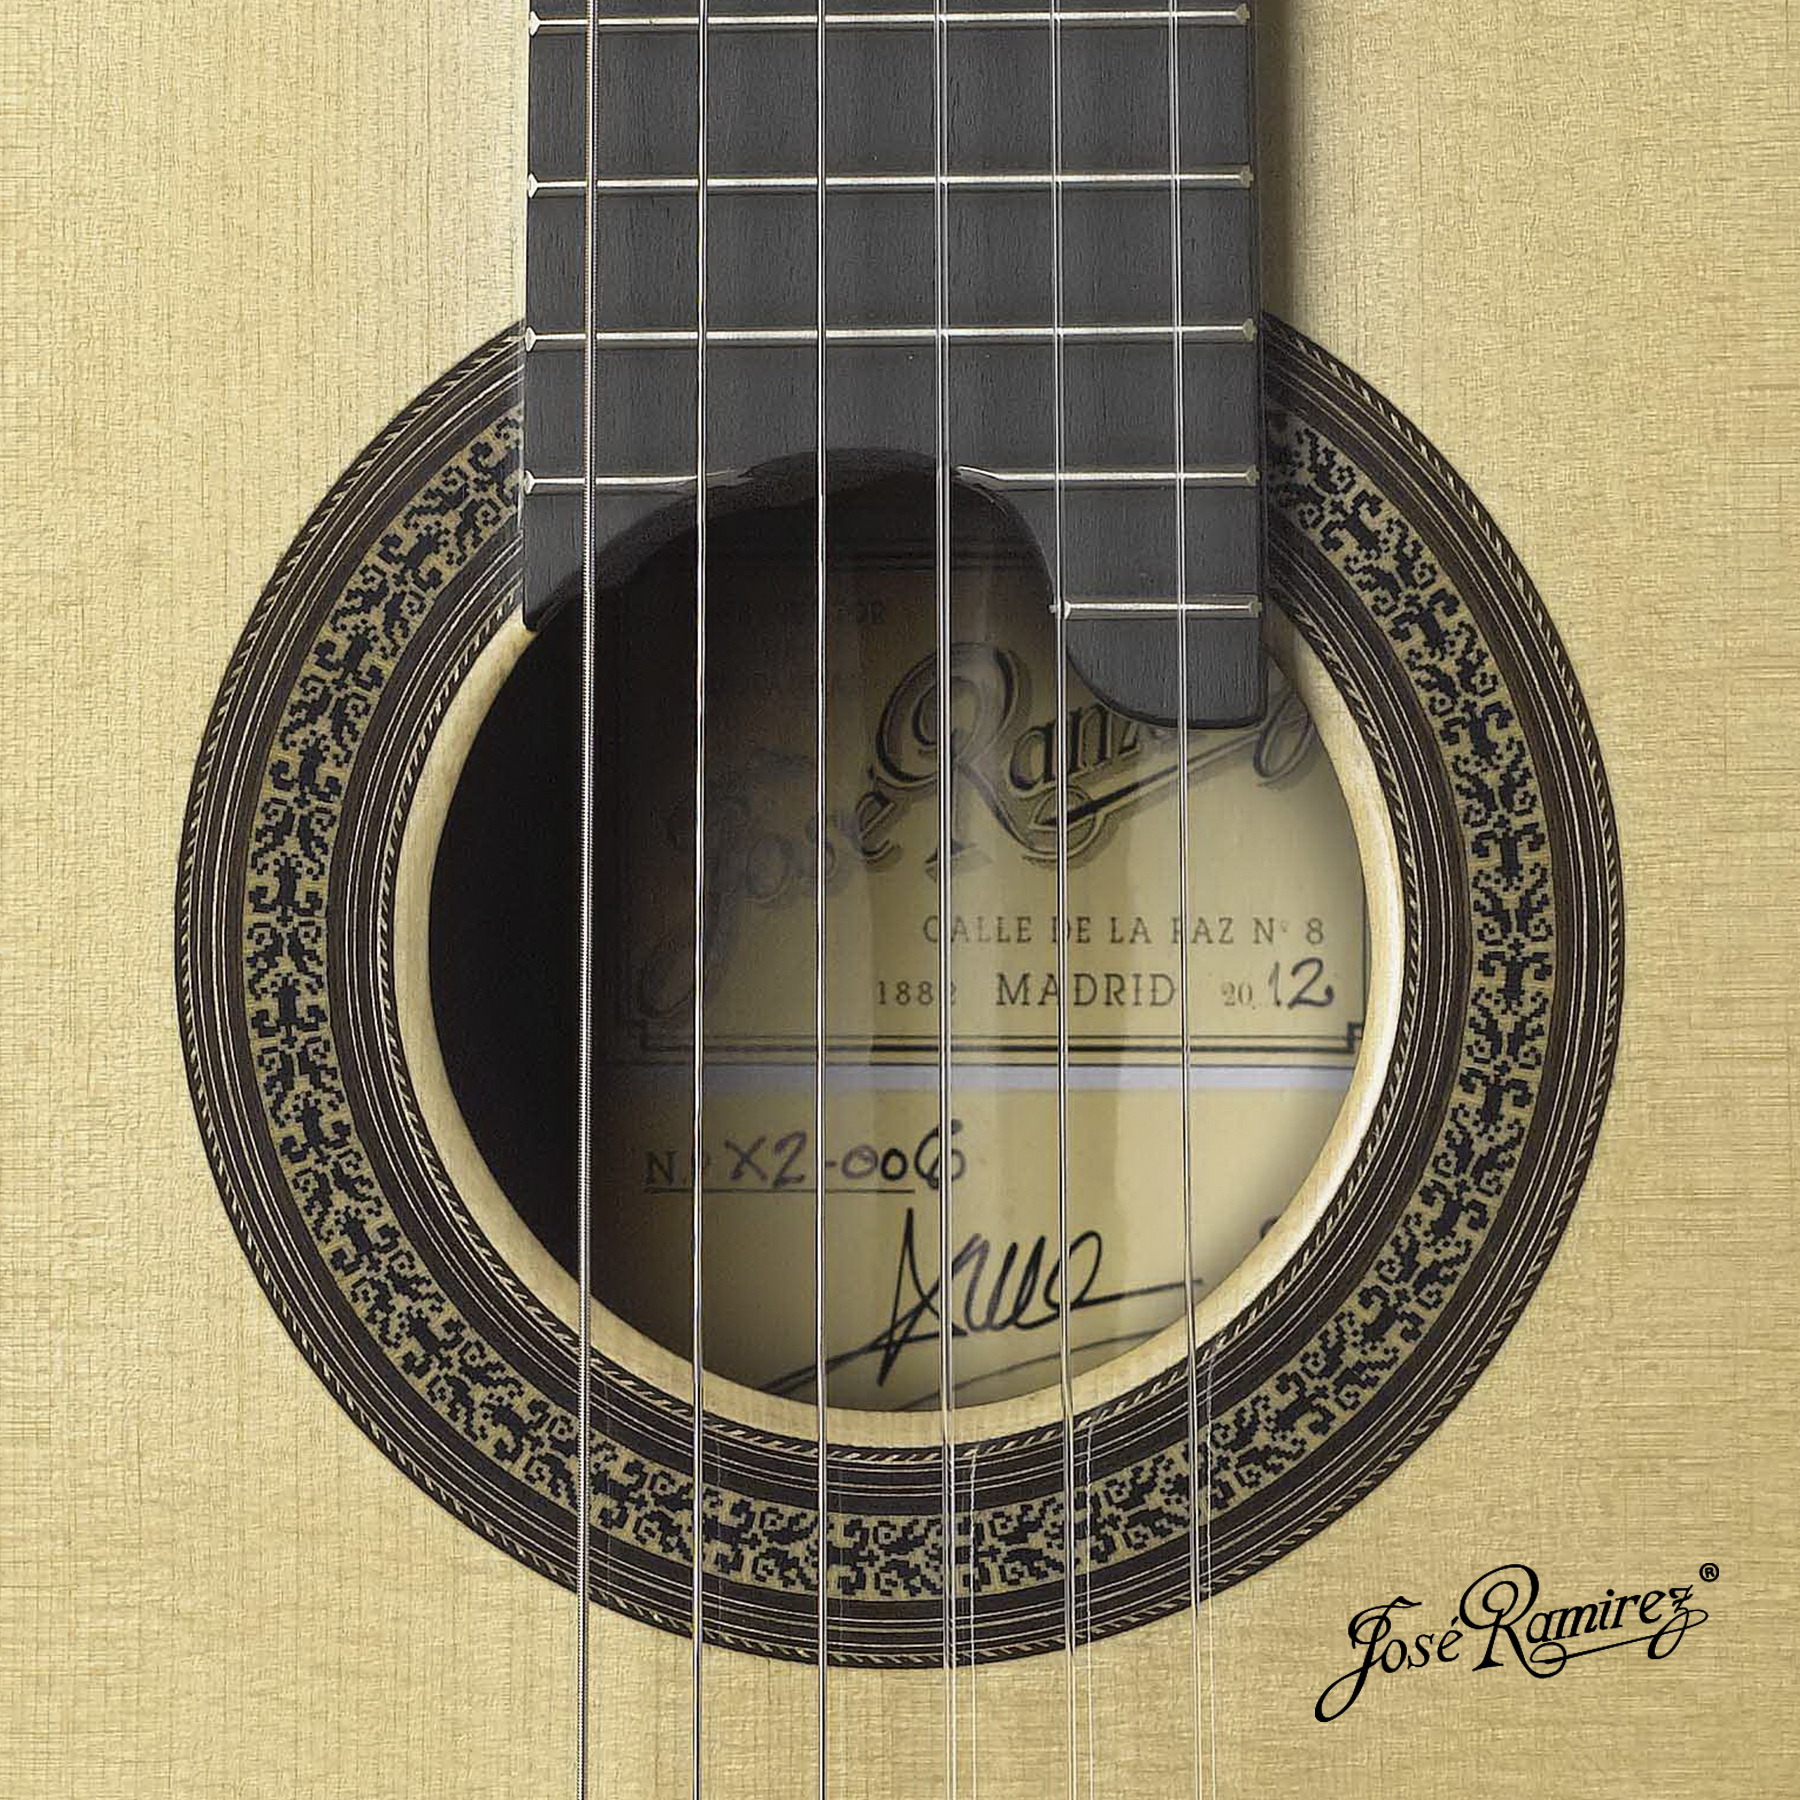 Boca de la guitarra artesana Antigua Ramírez